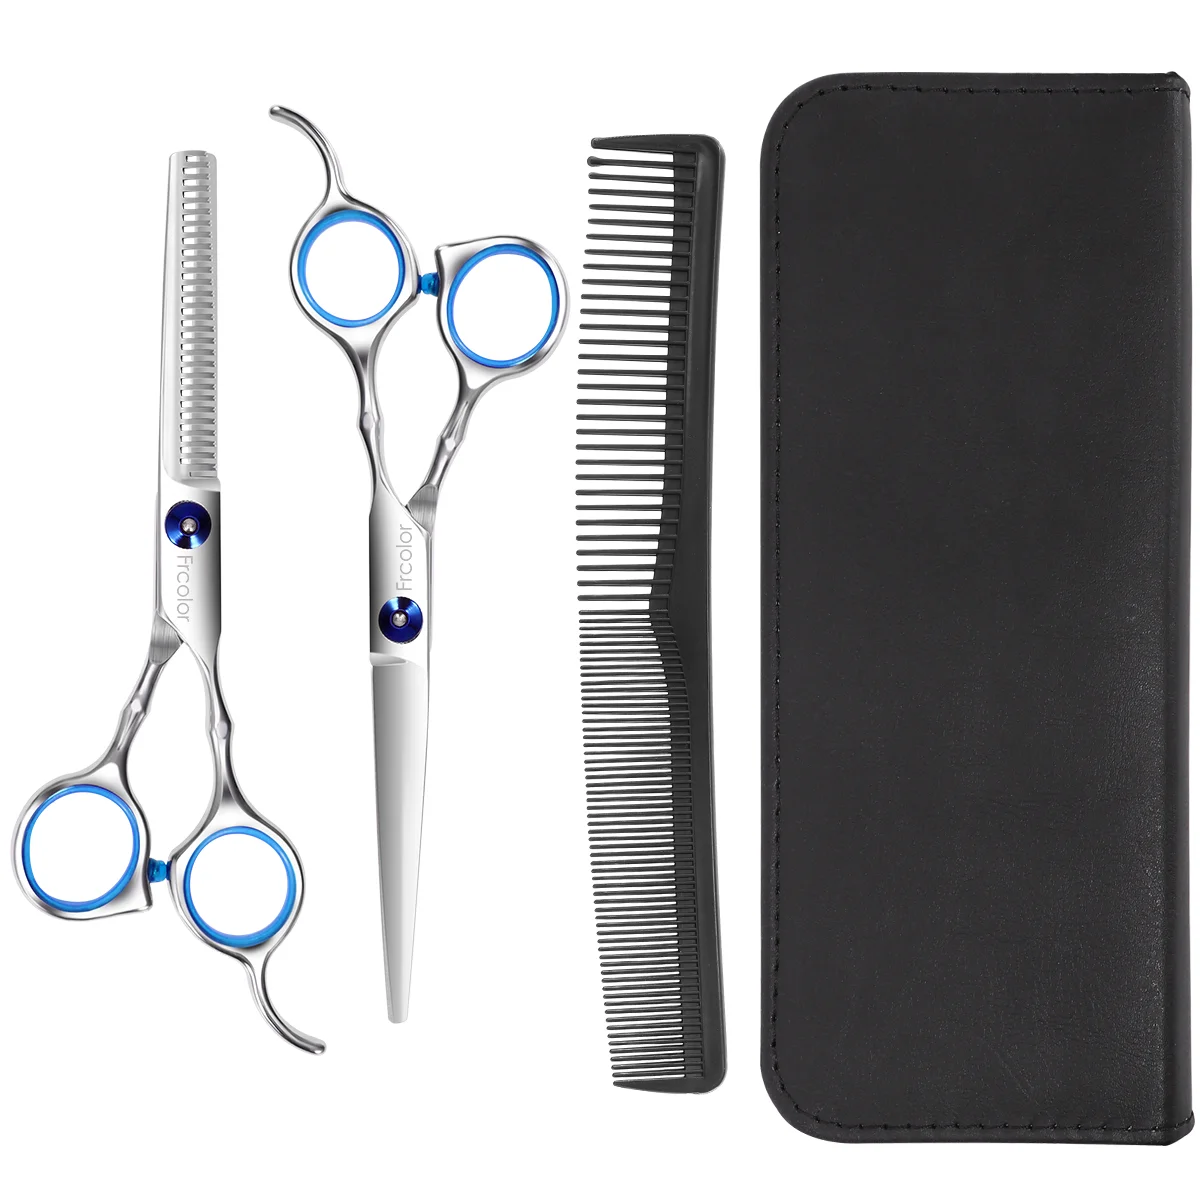 

5 филировочные ножницы Профессиональные для стрижки Парикмахерская парикмахерский фартук принадлежности Набор инструментов